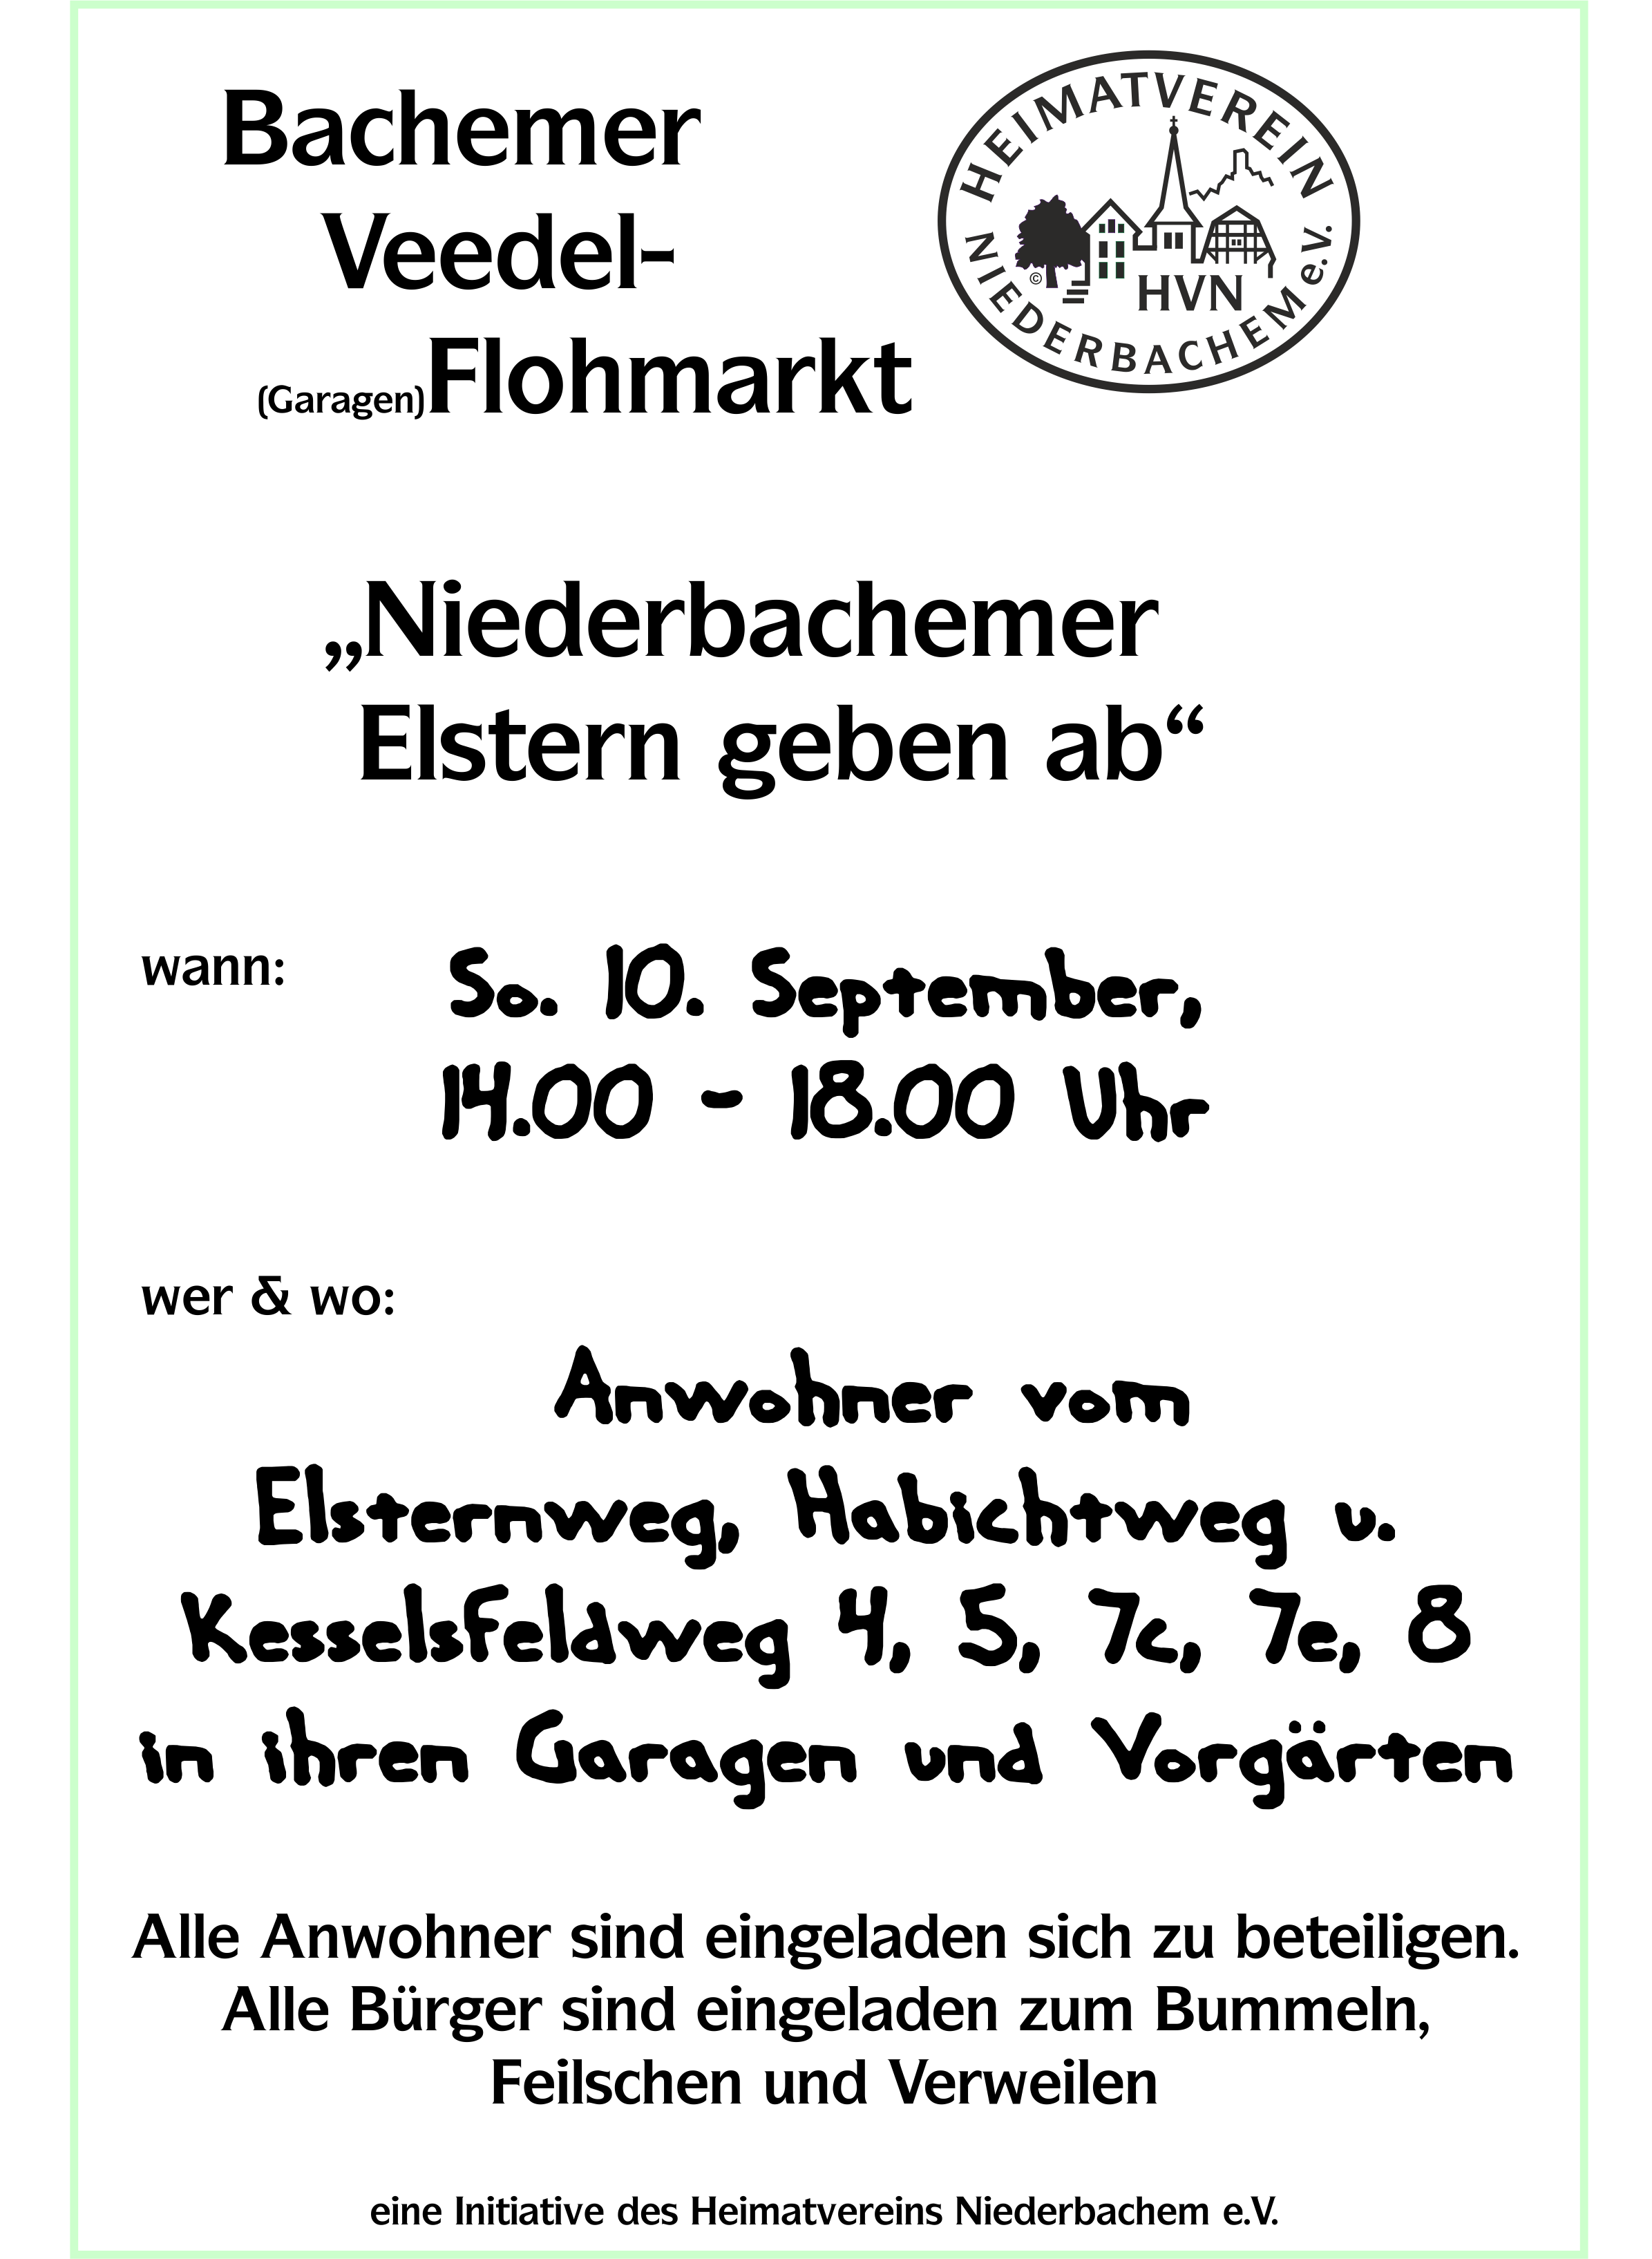 Plakat Veedel-Flohmarkt